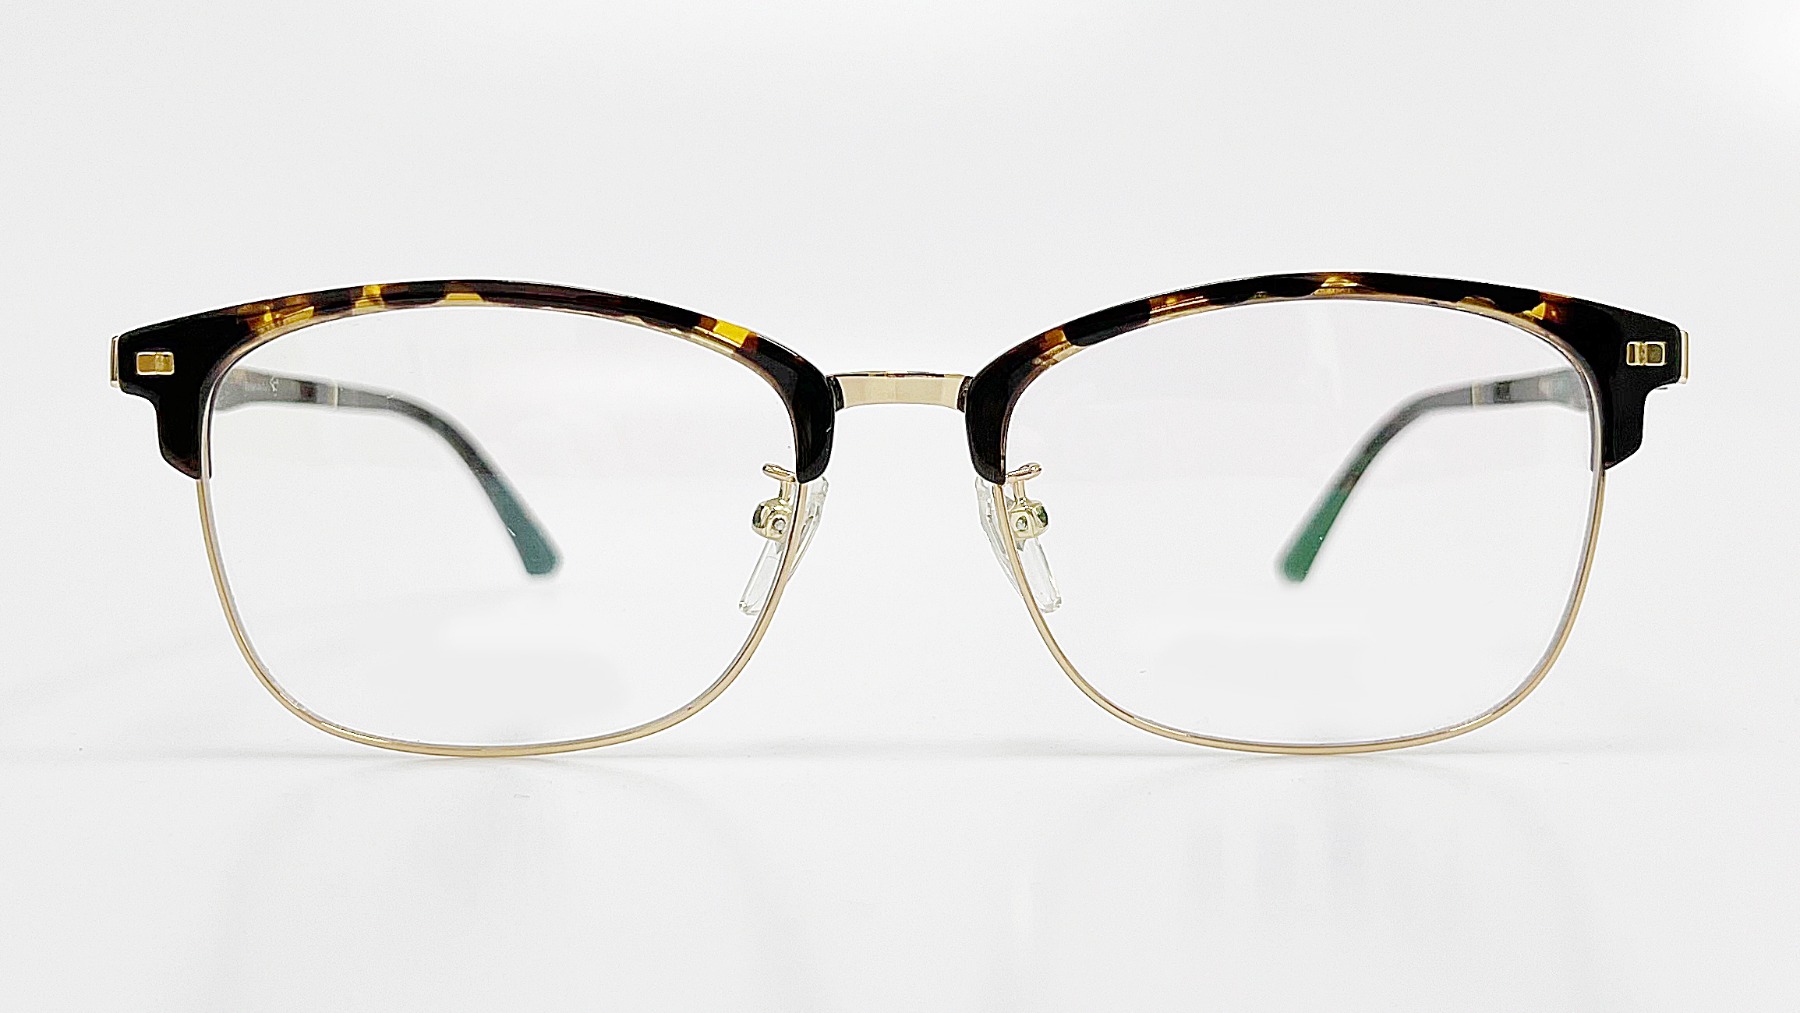 HORIEN_HN8027, Korean glasses, sunglasses, eyeglasses, glasses